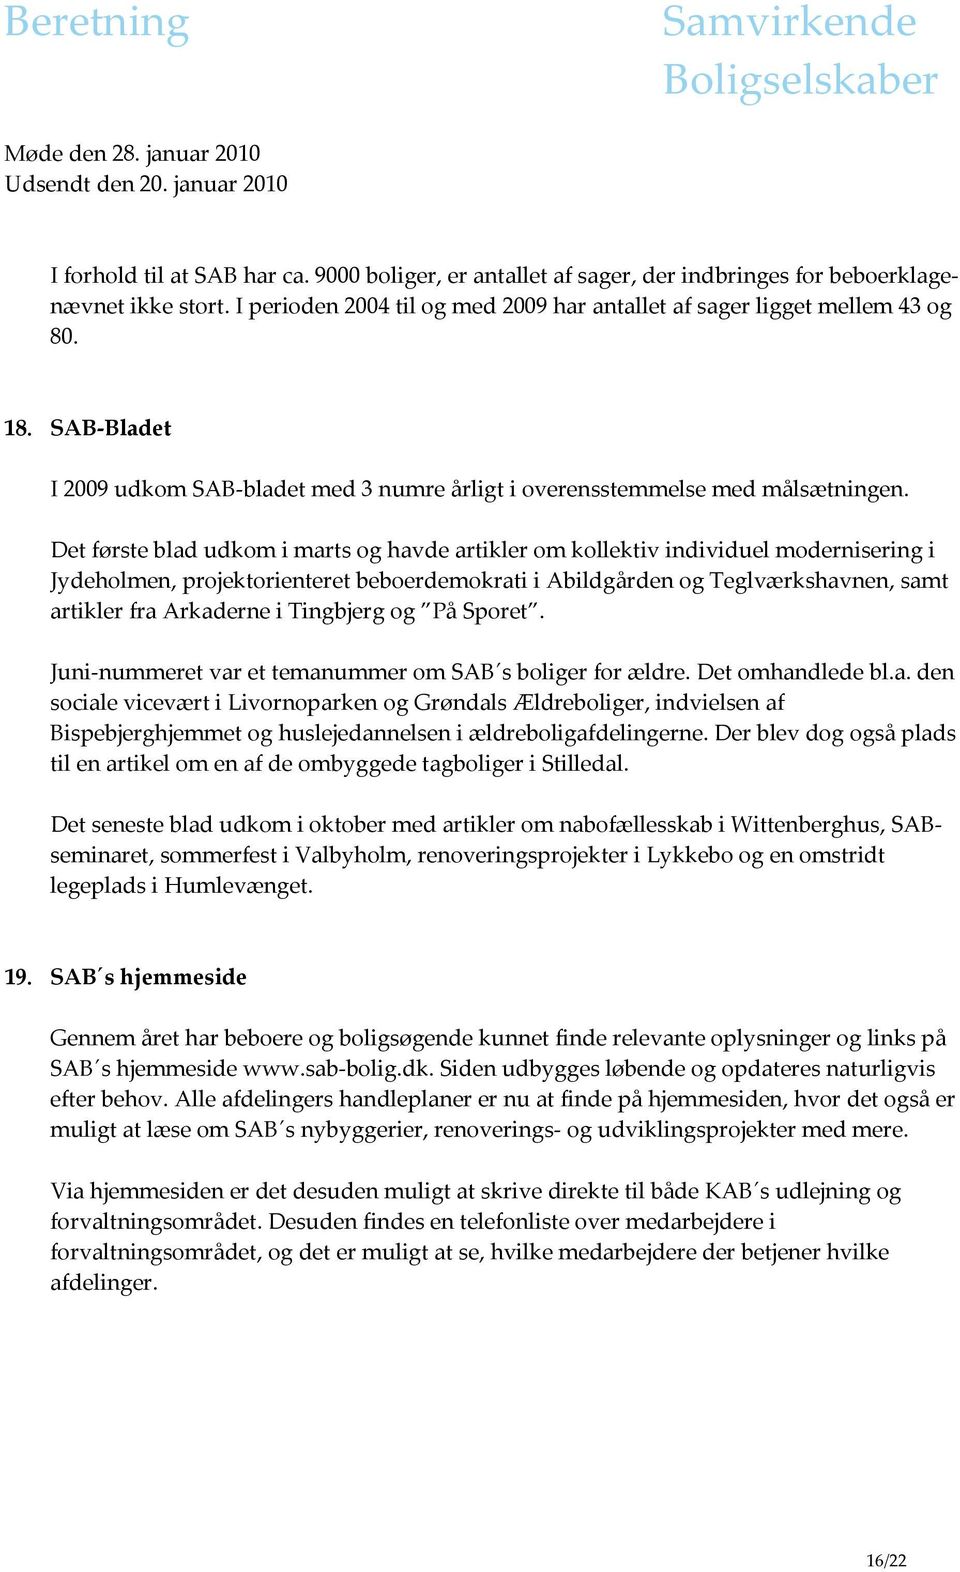 Det første blad udkom i marts og havde artikler om kollektiv individuel modernisering i Jydeholmen, projektorienteret beboerdemokrati i Abildgården og Teglværkshavnen, samt artikler fra Arkaderne i